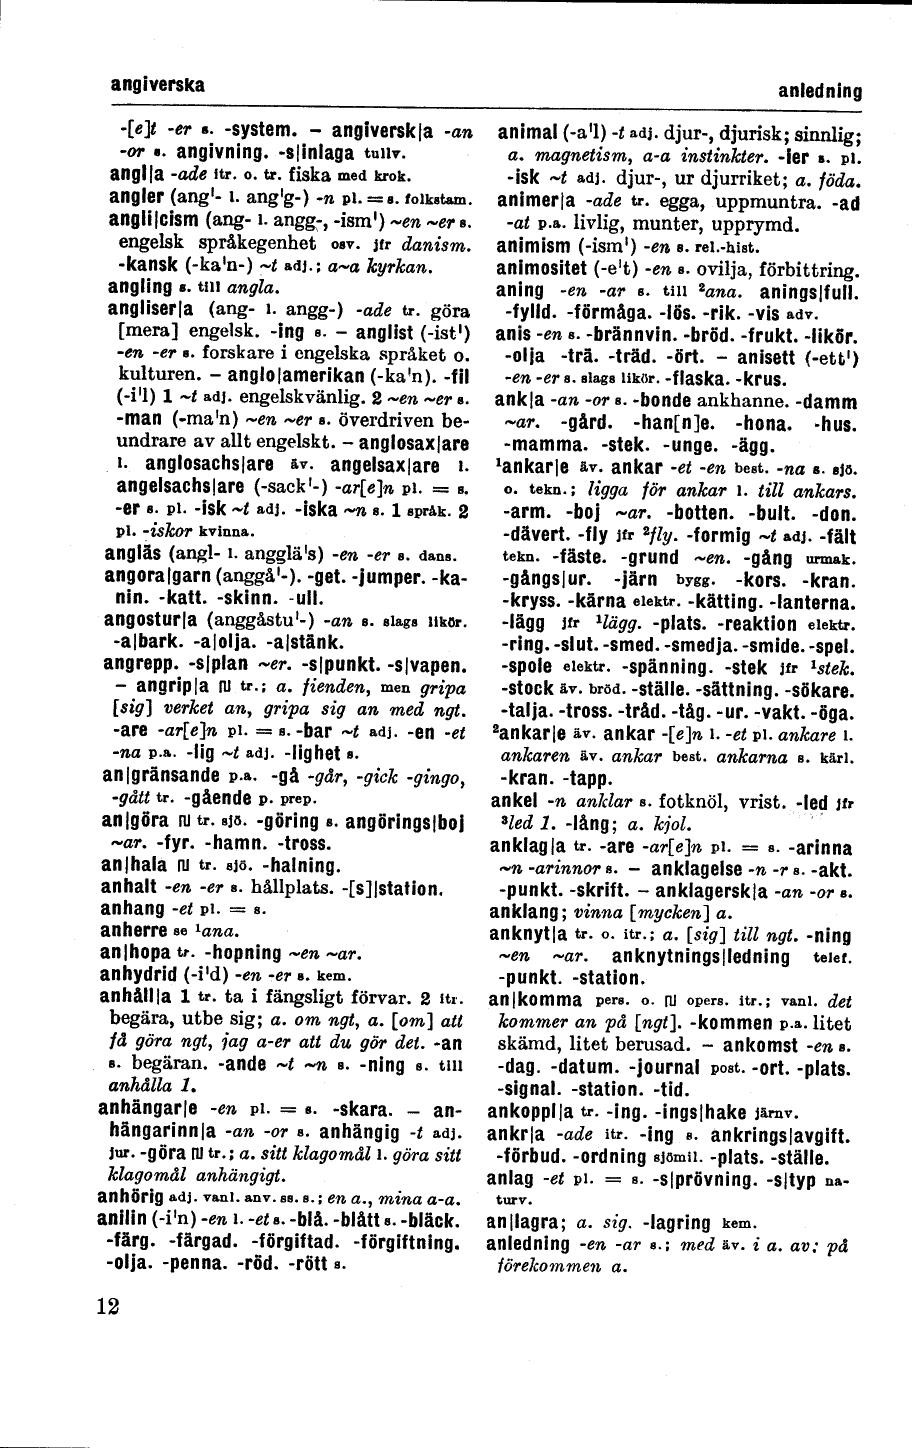 12 (Svenska Akademiens ordlista / Nionde upplagan, femte tryckningen (1954))